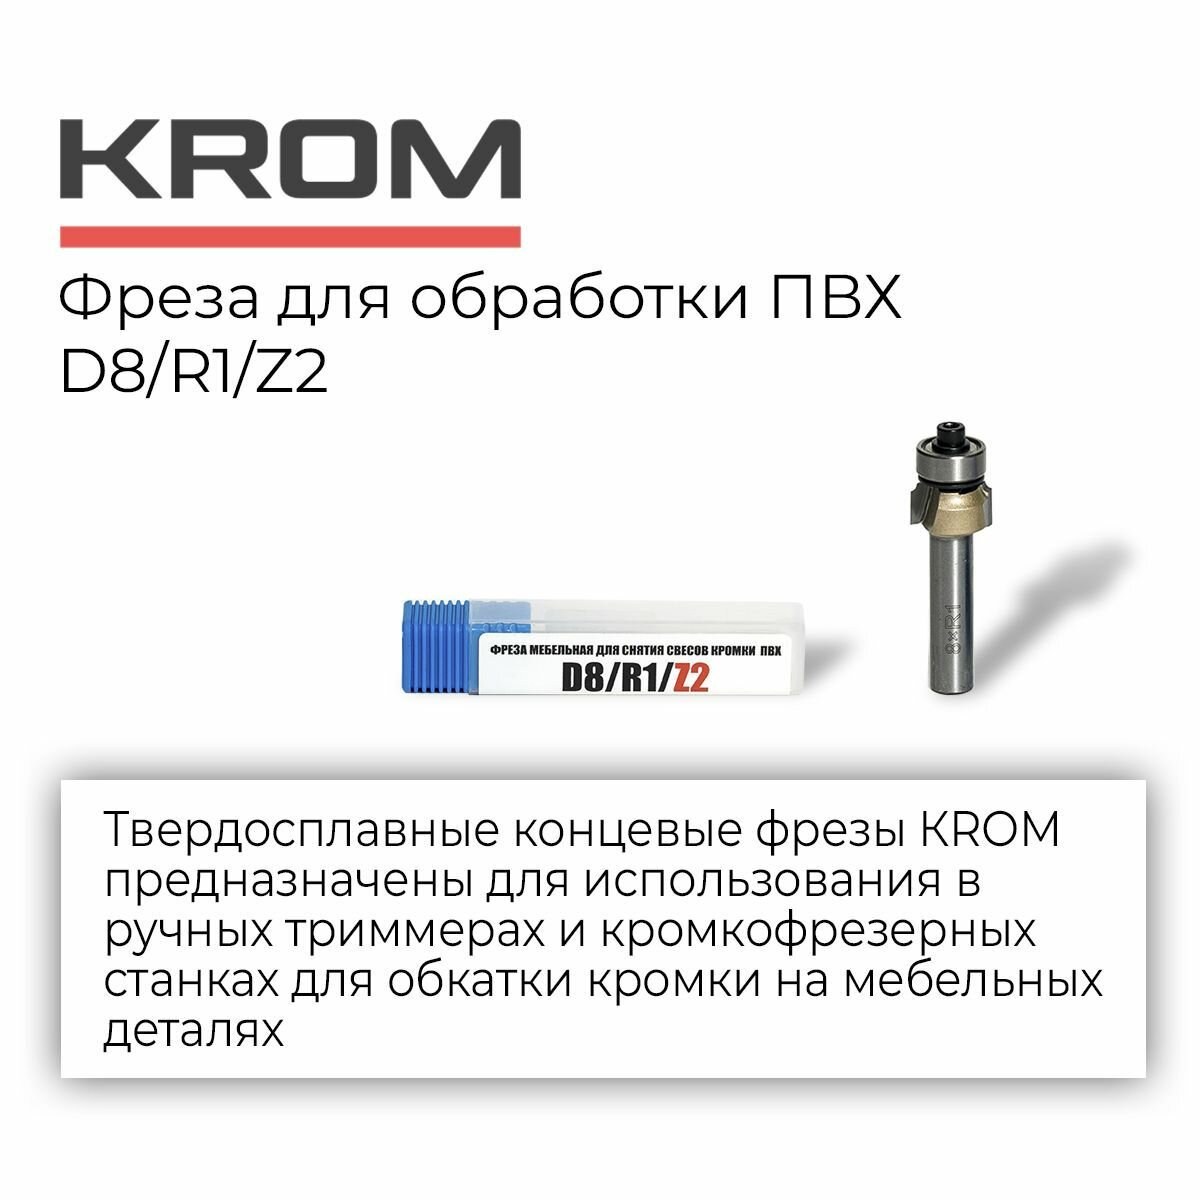 Фрезы для обработки ПВХ Krom D8/R1/Z2